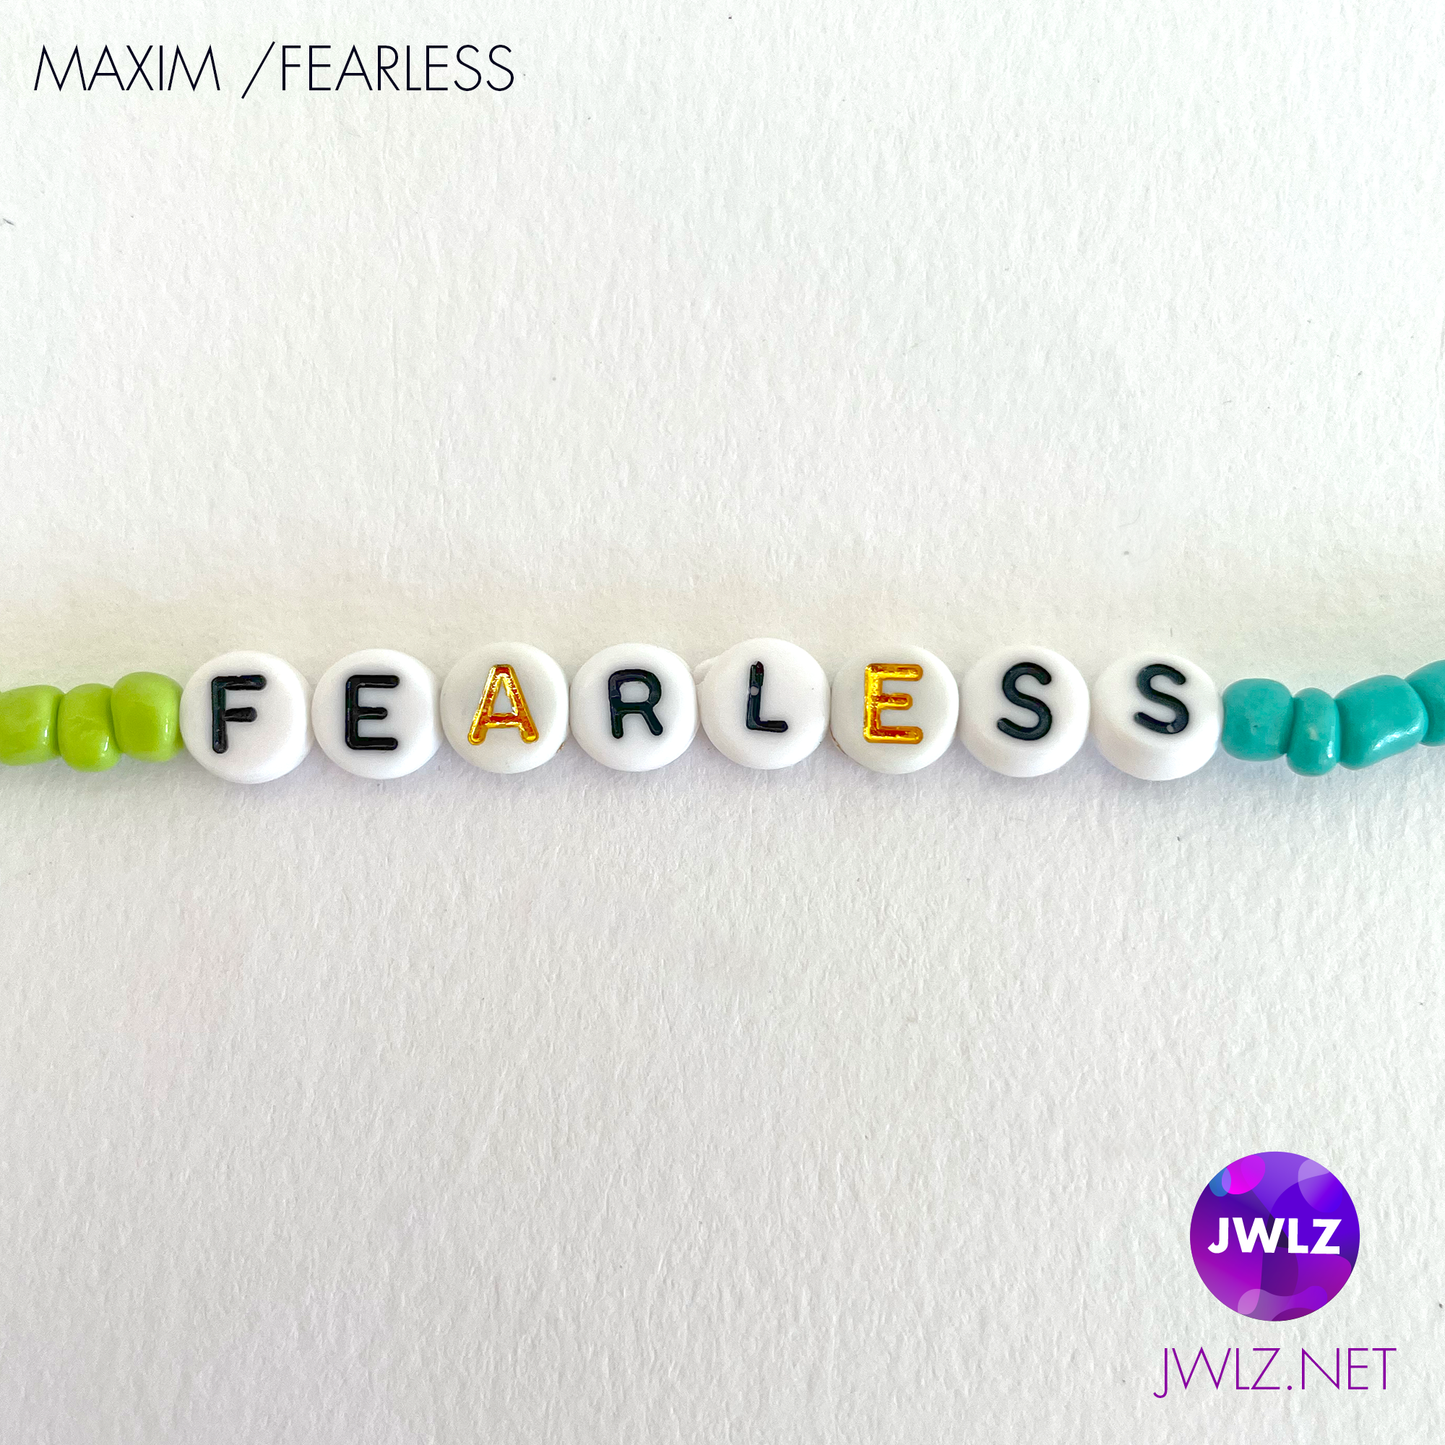 Maxim Fearless